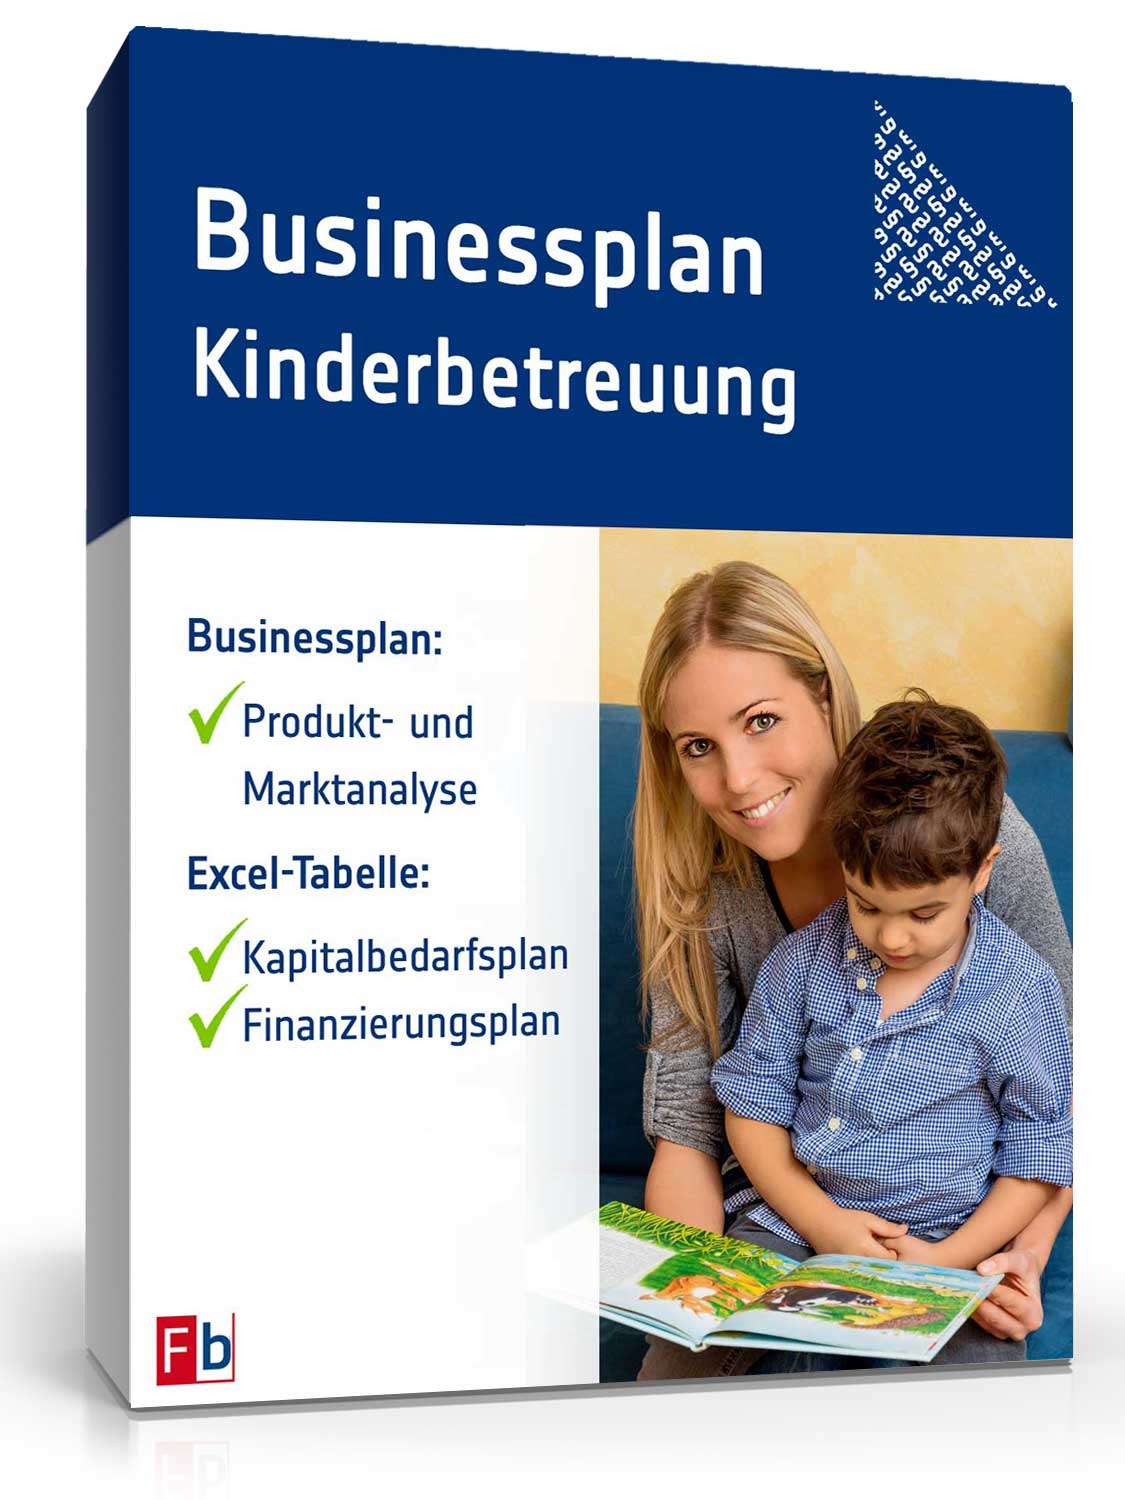 Hauptbild des Produkts: Businessplan Kinderbetreuung